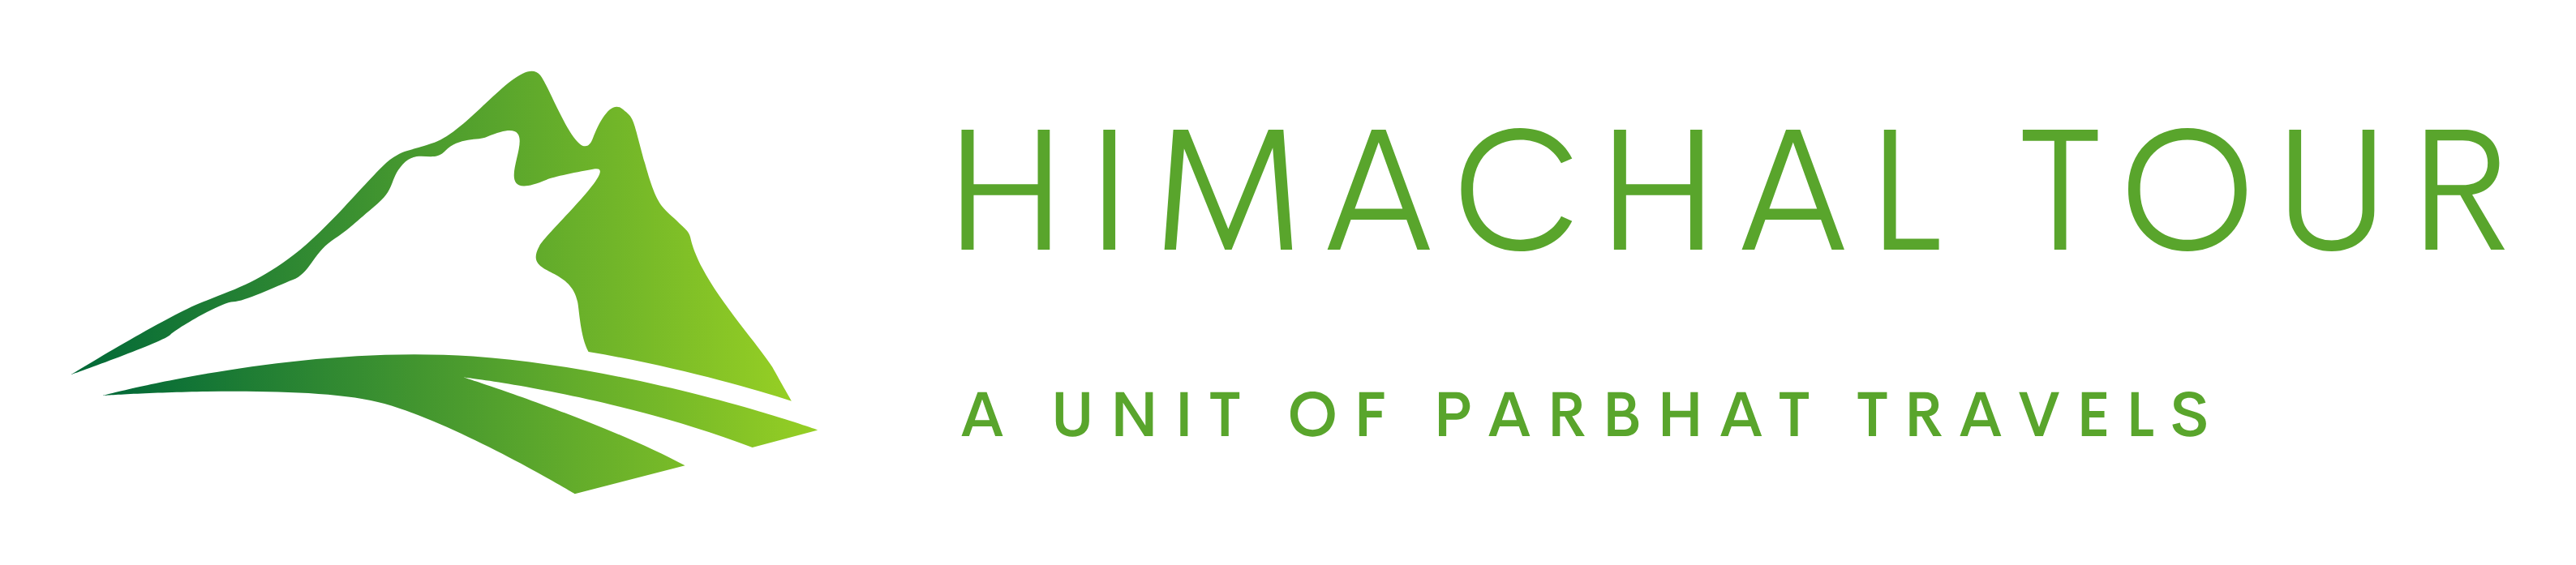 Himachal Tour DMC